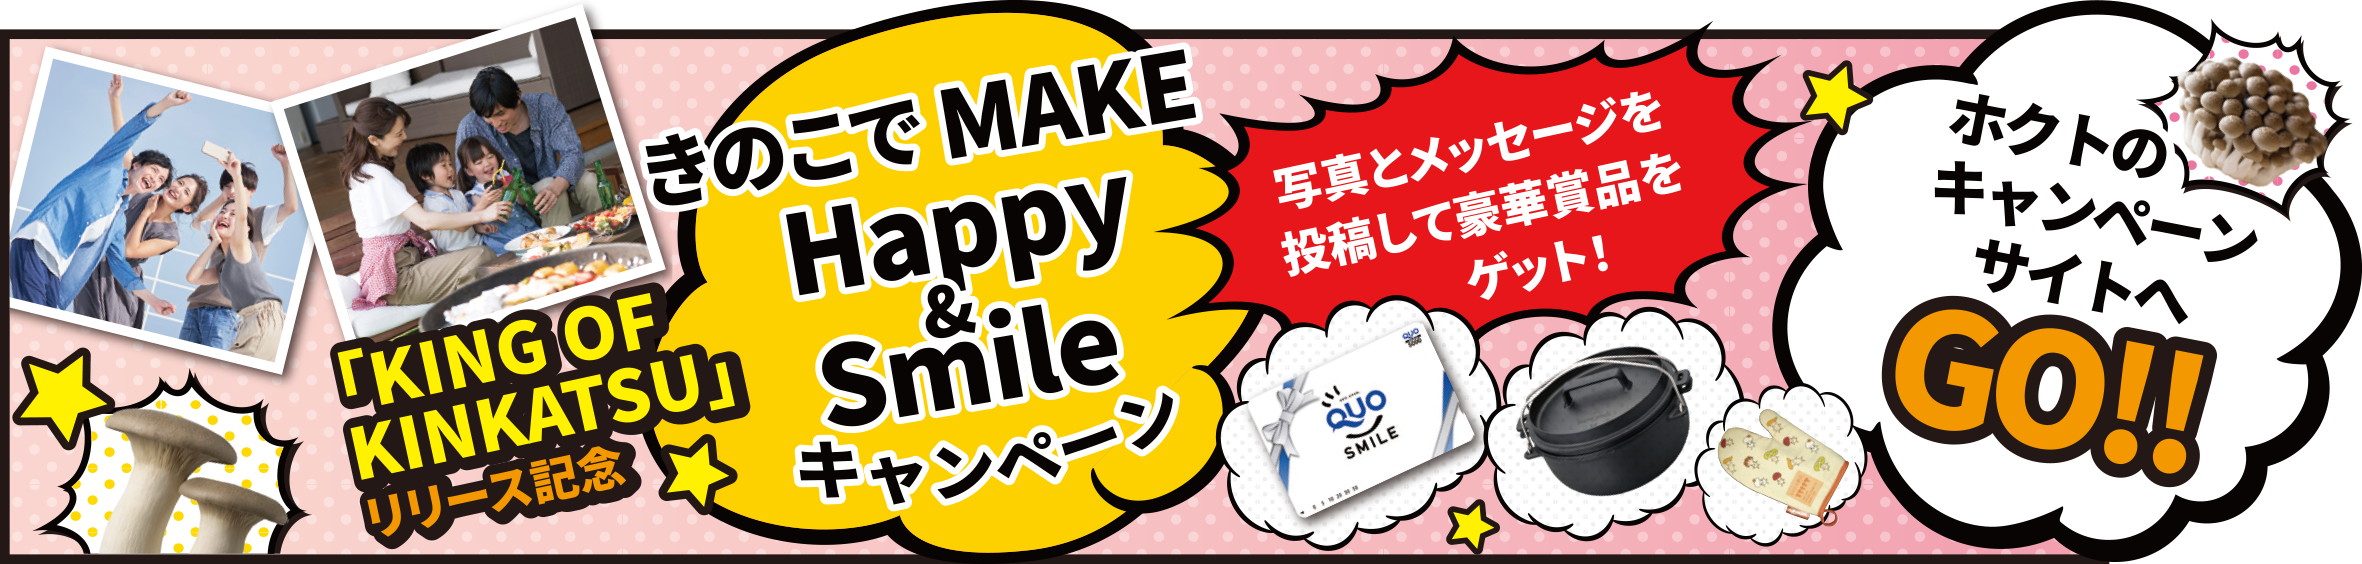 きのこでMAKE Happy & Smile キャンペーン